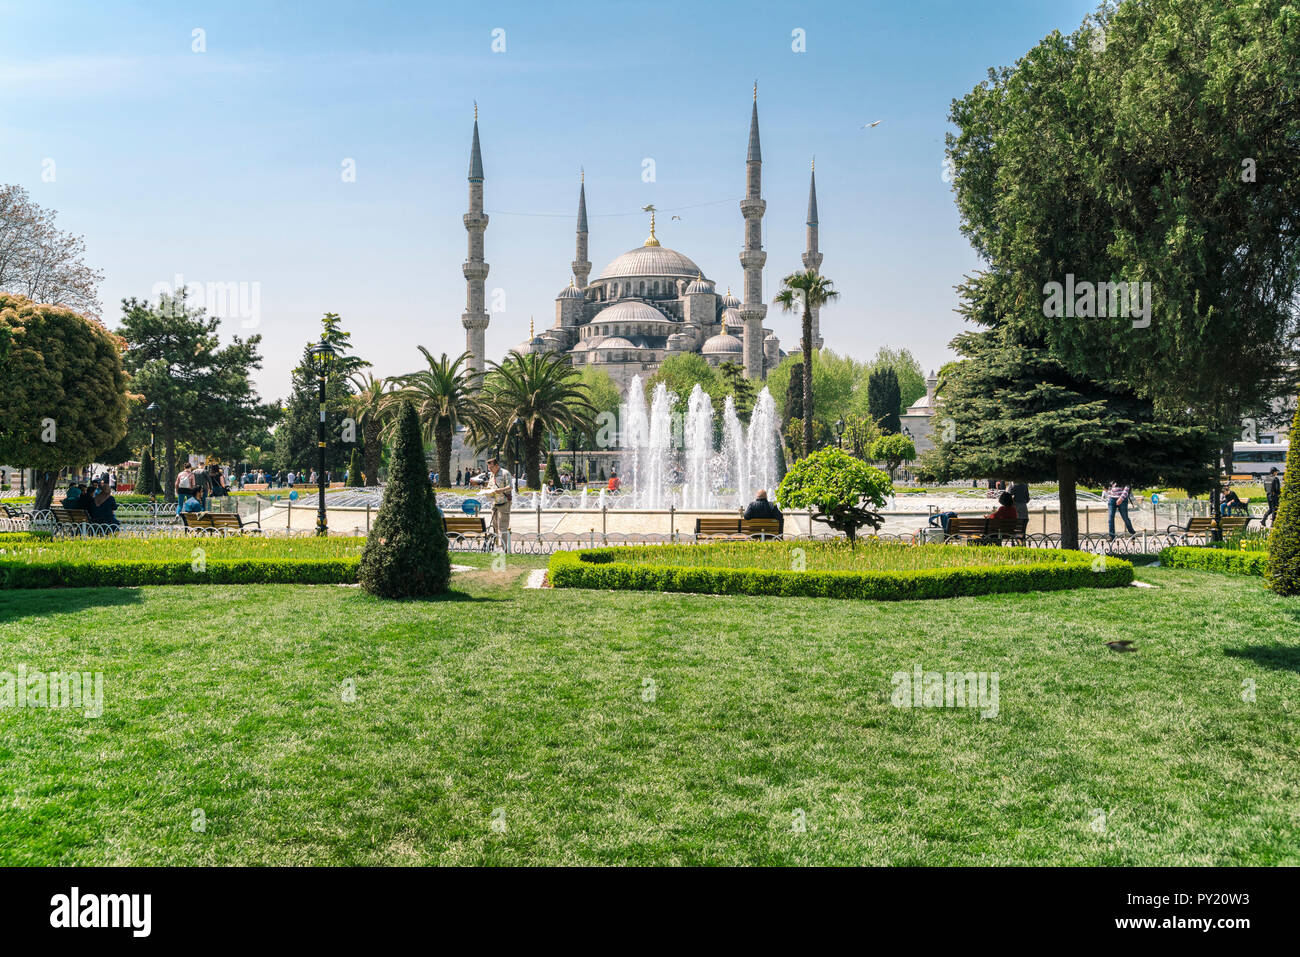 Sultan Ahmed moschea, una moschea del XVII secolo ed è considerata una delle più belle moschee in tutto il mondo, progettato dal famoso architetto Sinan, Istanbul, Turchia Foto Stock